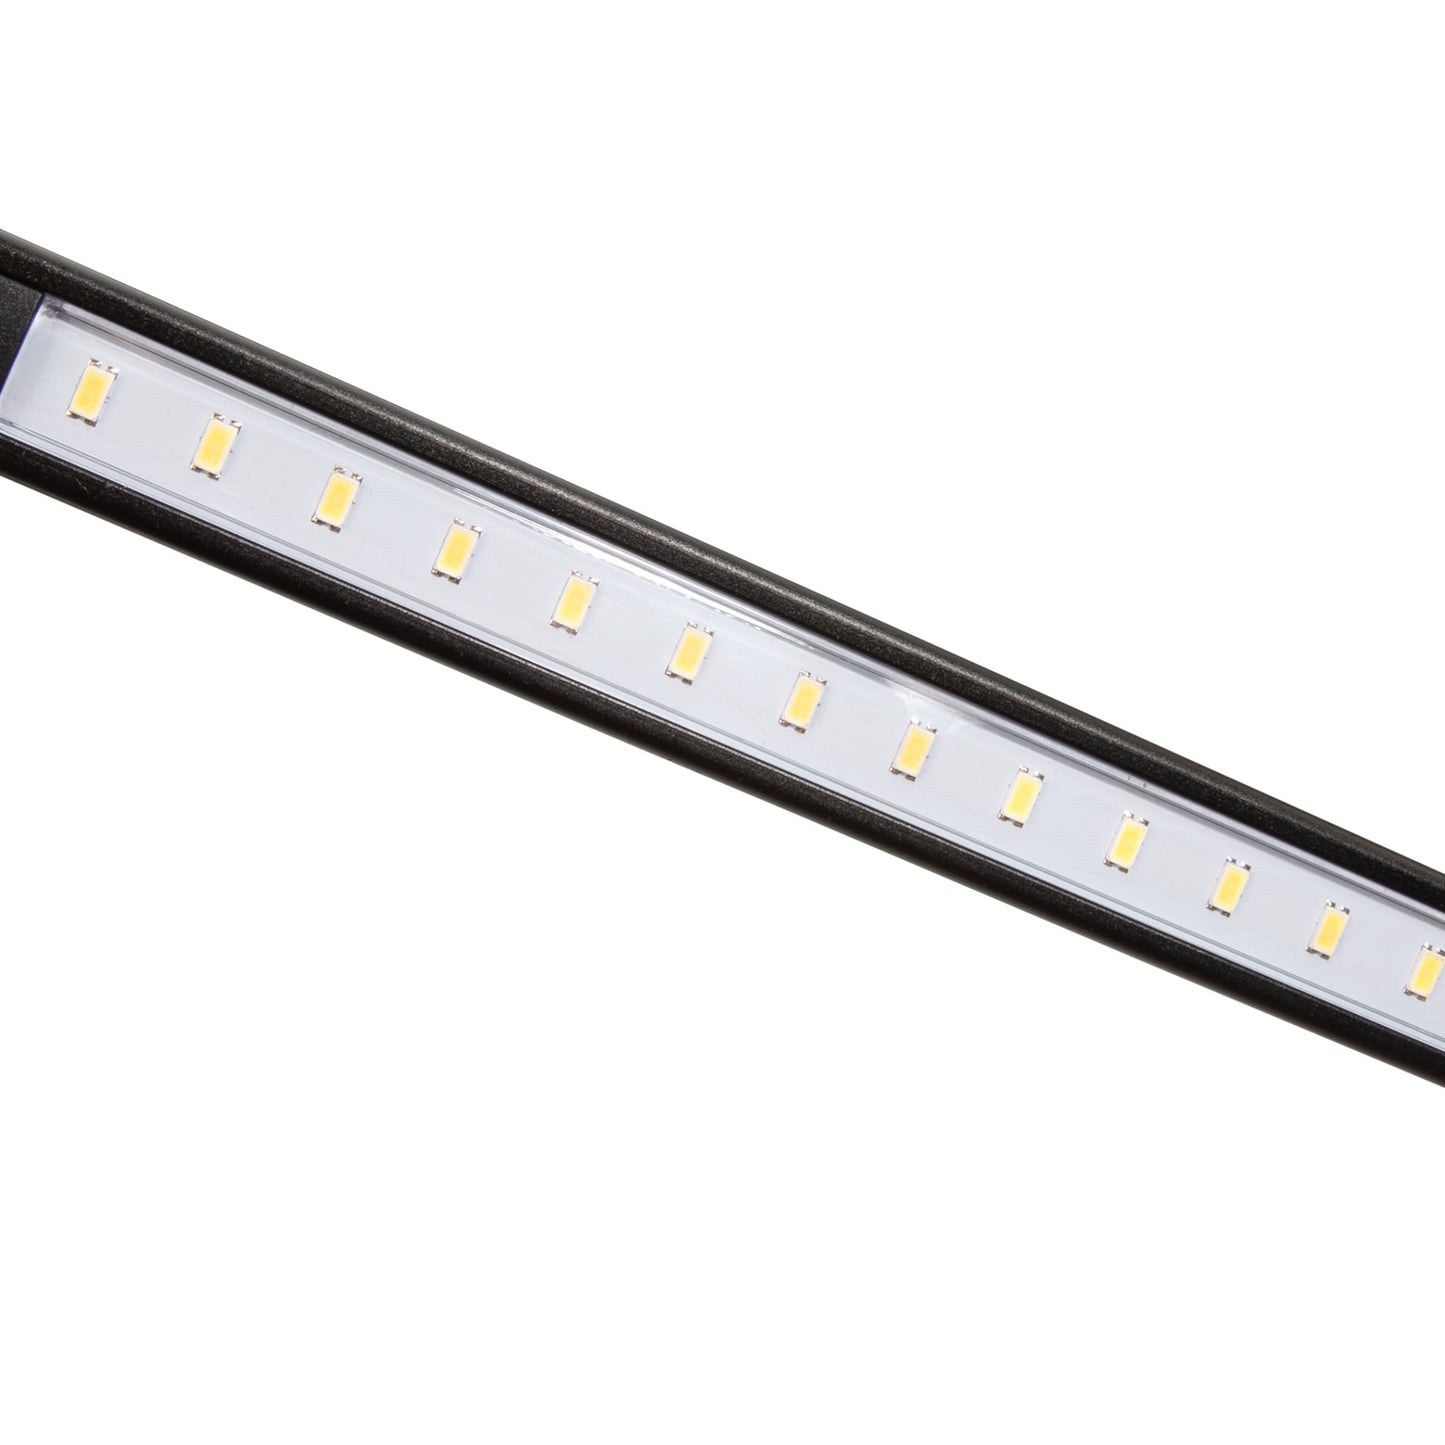 500-Lumen LED Motion Sensor 3-Piece Magnetic Light Strip Kit for Storage Racks